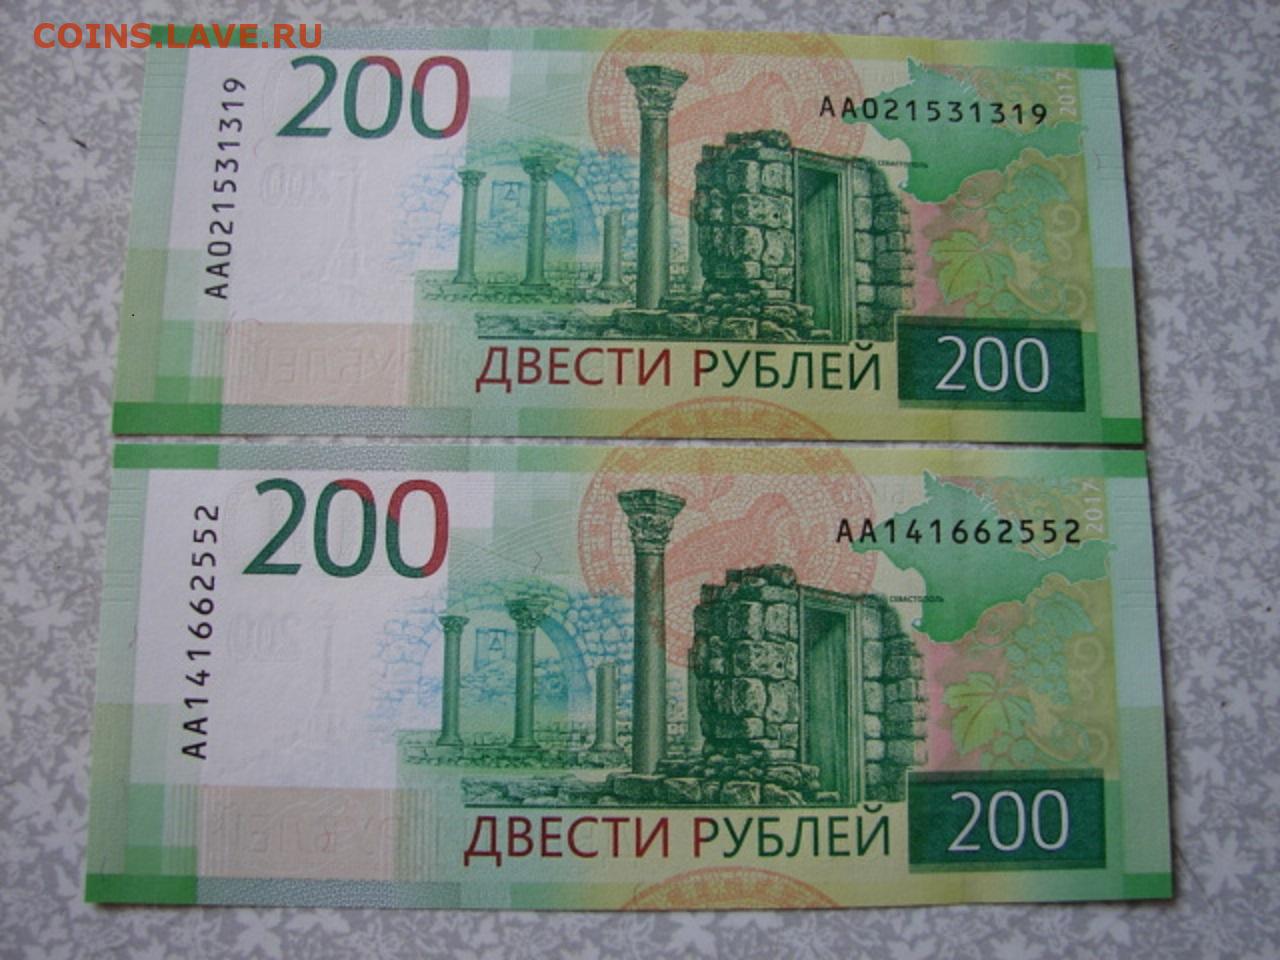 12 200 в рубли. Купюра 200 рублей. 200 Рублей банкнота Крым.